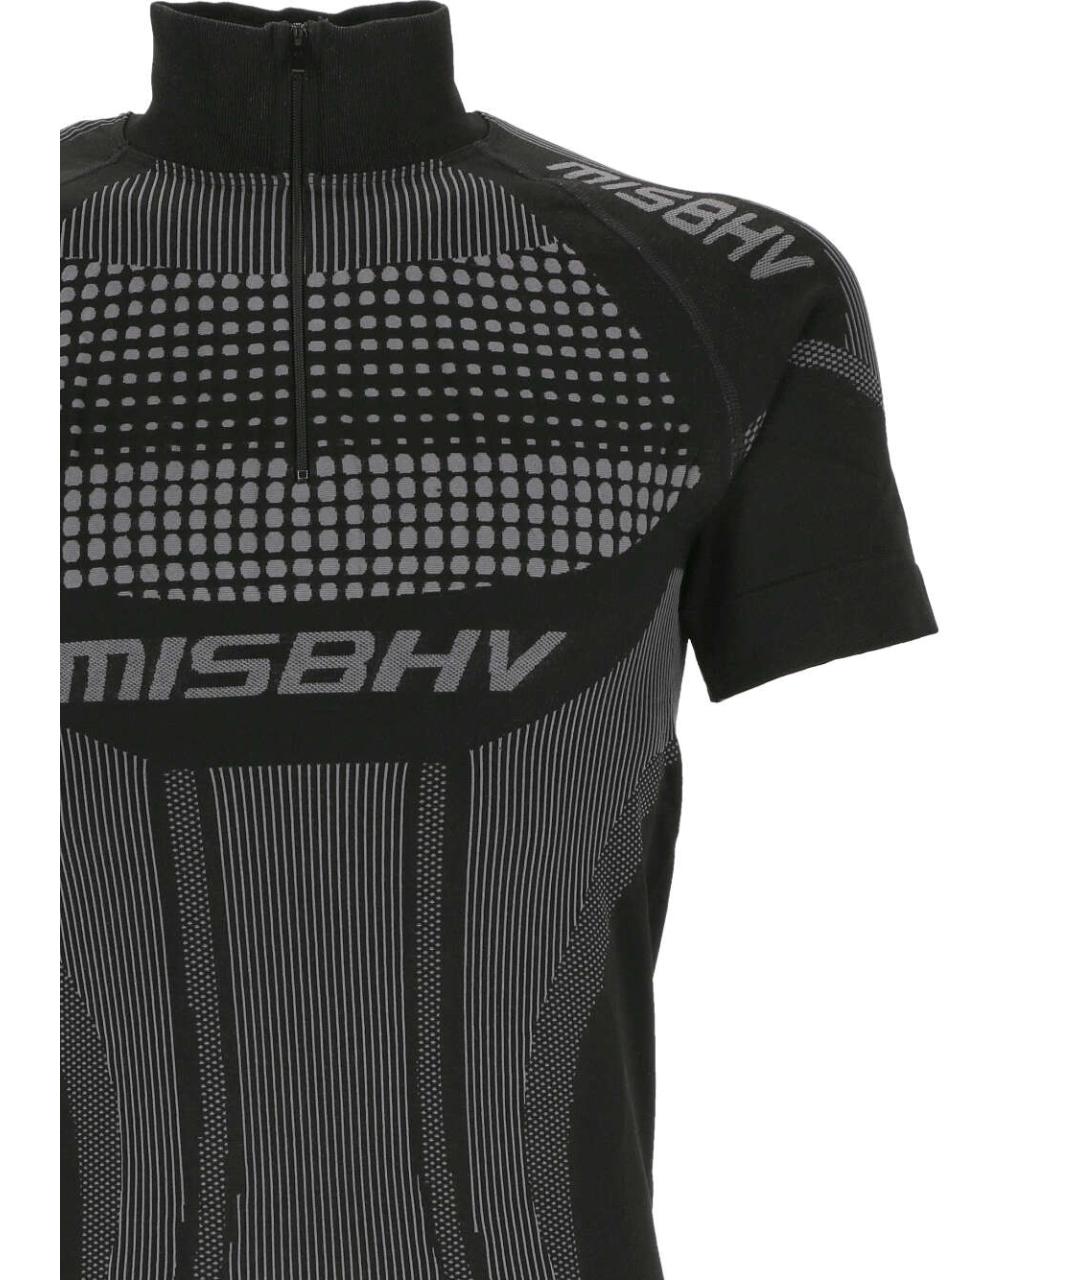 MISBHV Черная футболка, фото 2